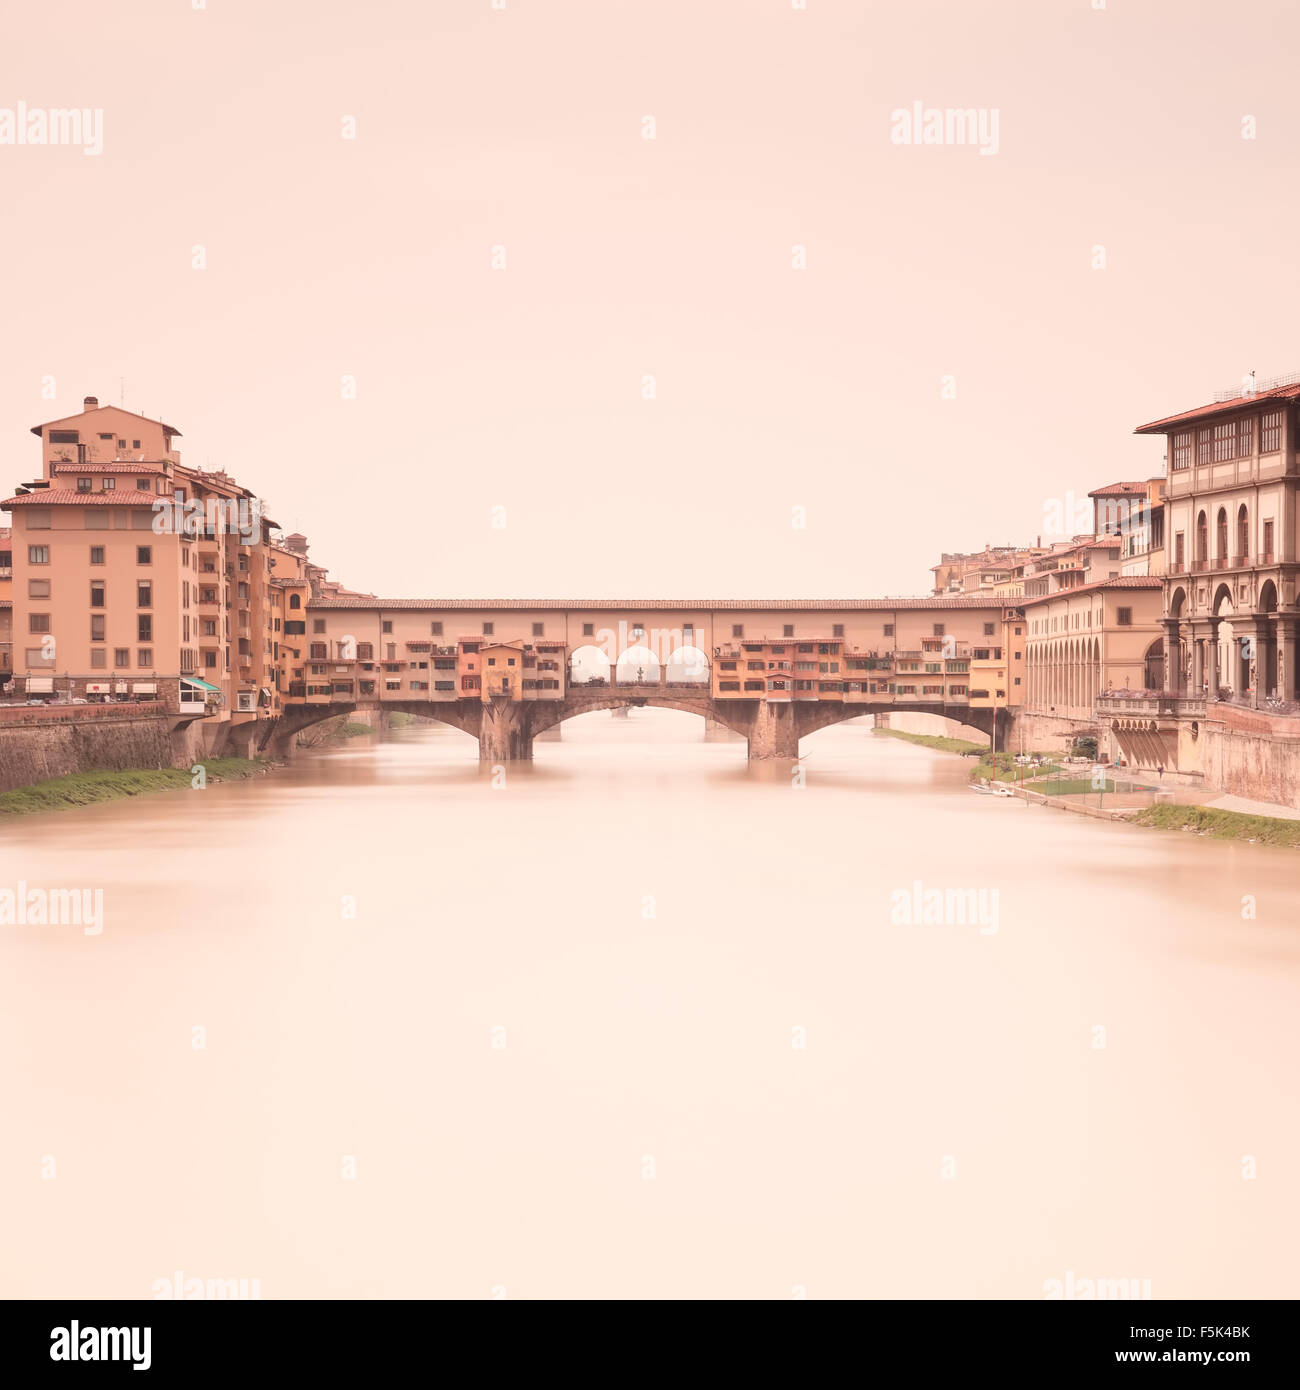 Ponte Vecchio mittelalterlichen Wahrzeichen am Fluss Arno in einer warmen Vintage Stimmung genommen durch eine 2 Minuten lange Belichtung Fotografie Stockfoto